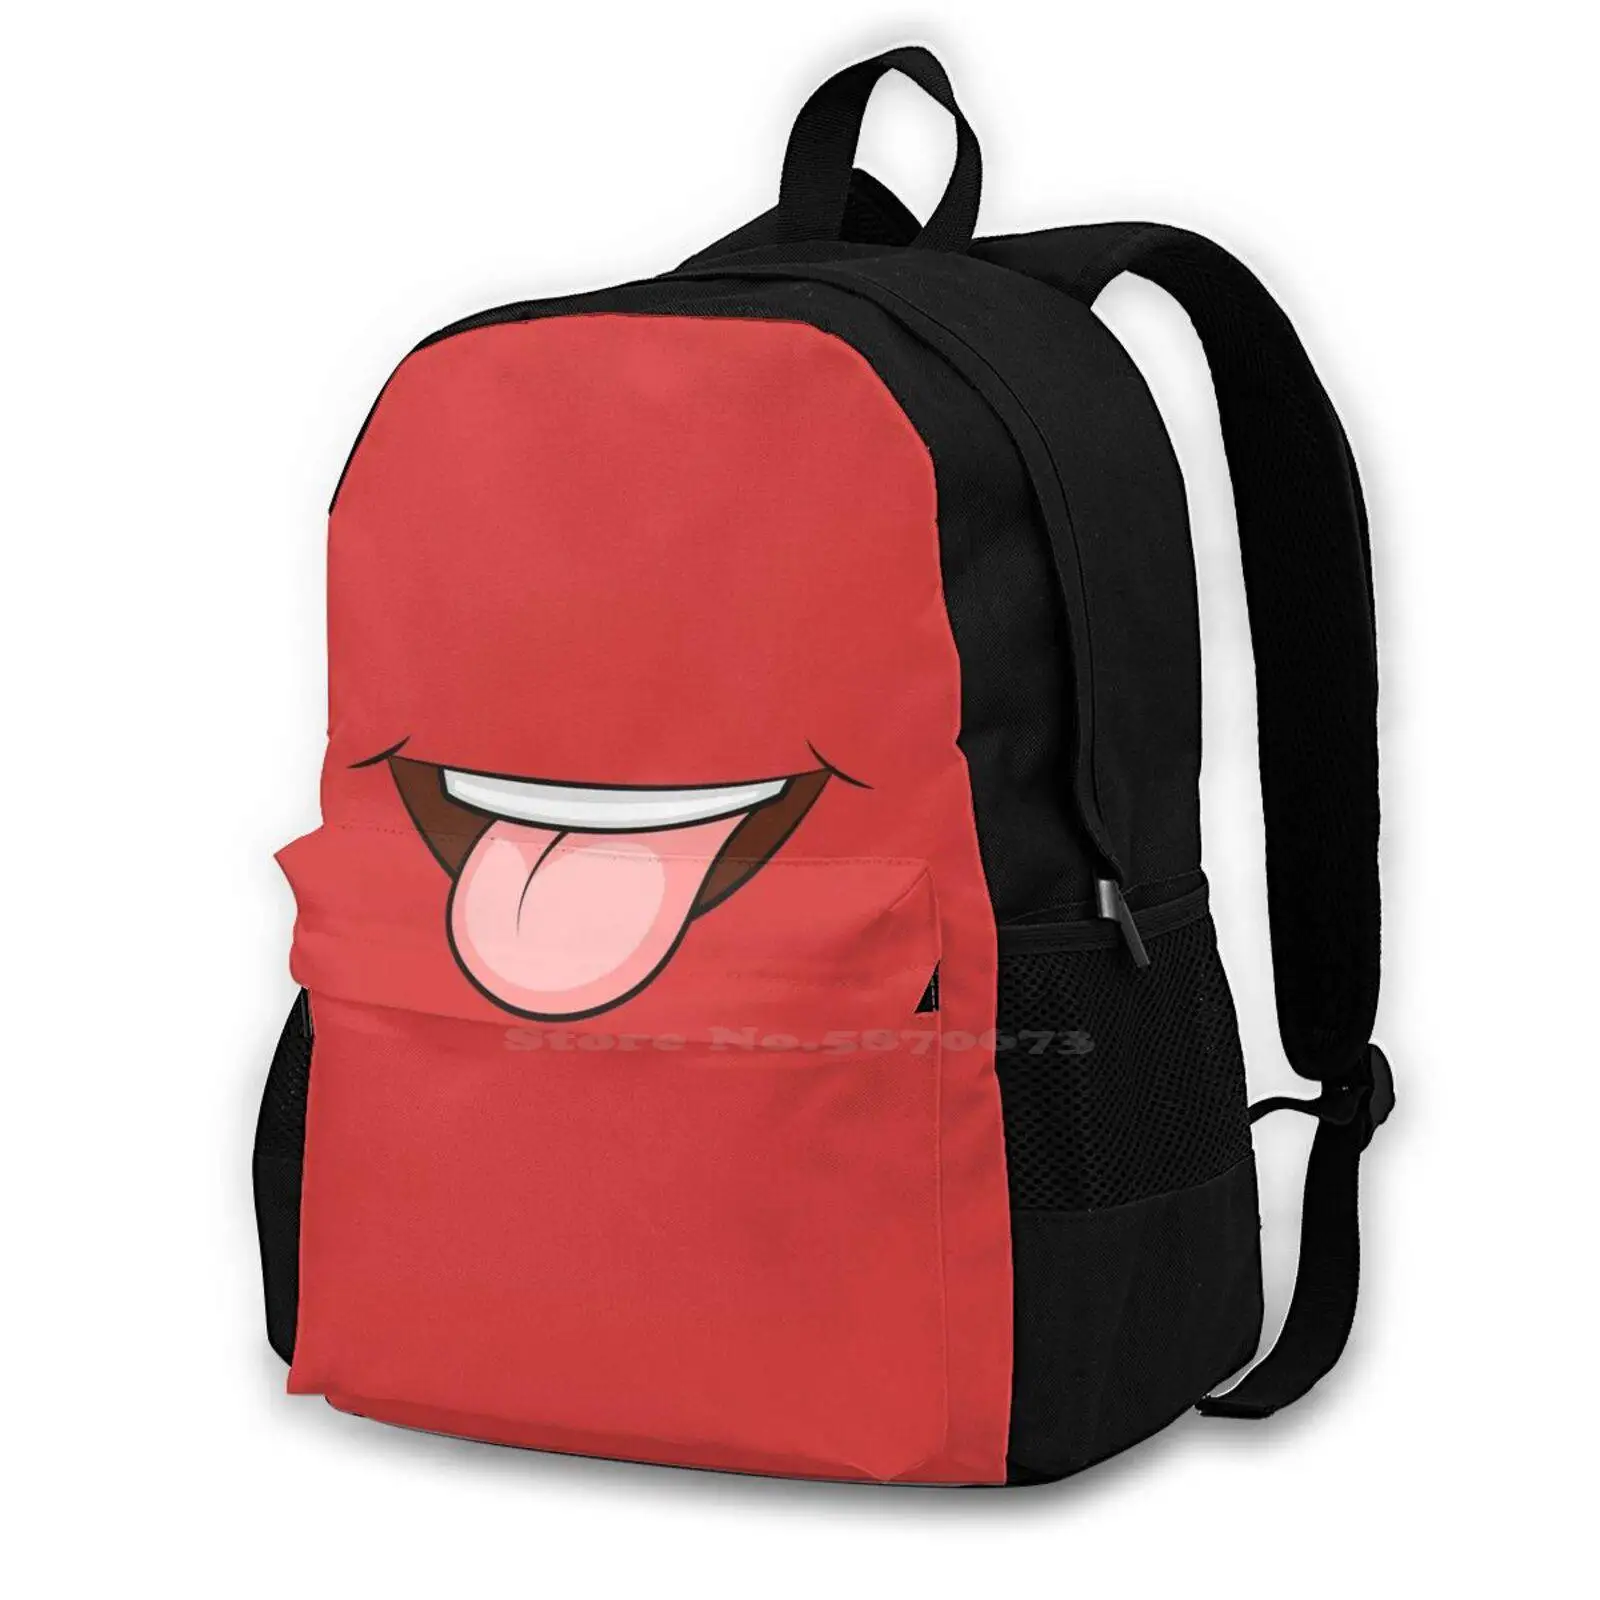 

Дорожный рюкзак для ноутбука Chenif, школьные сумки, несовершенство Nyan, поцелуи, ДНК, губы, член, блеск для губ, блеск для губ, искусственный льняной блеск для губ